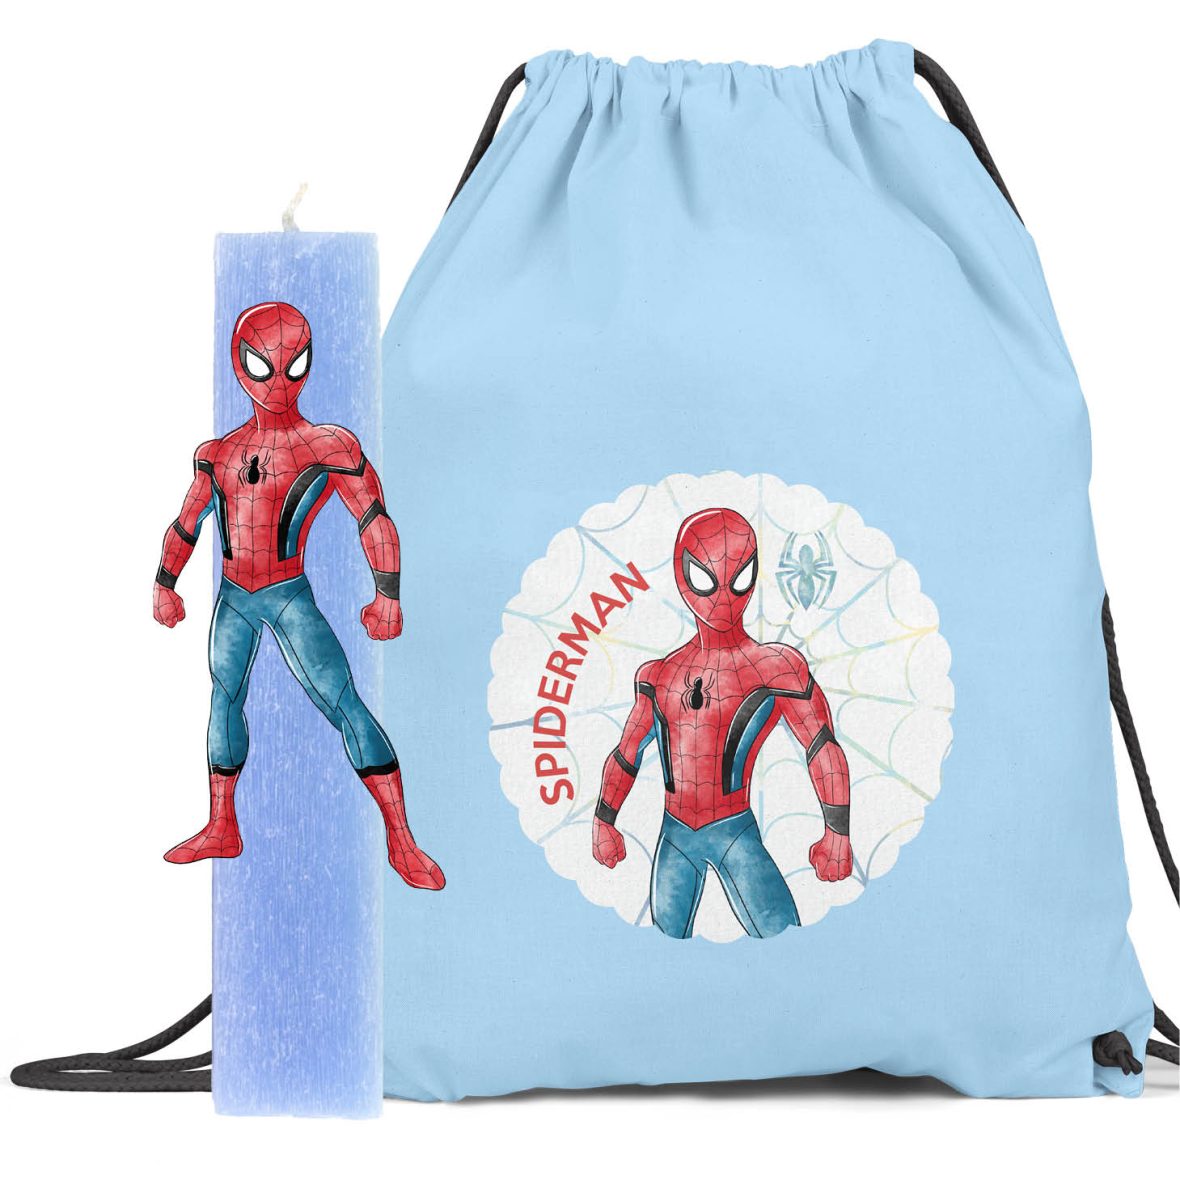 Λαμπάδα με ξύλινη φιγούρα & backpack “Spiderman”